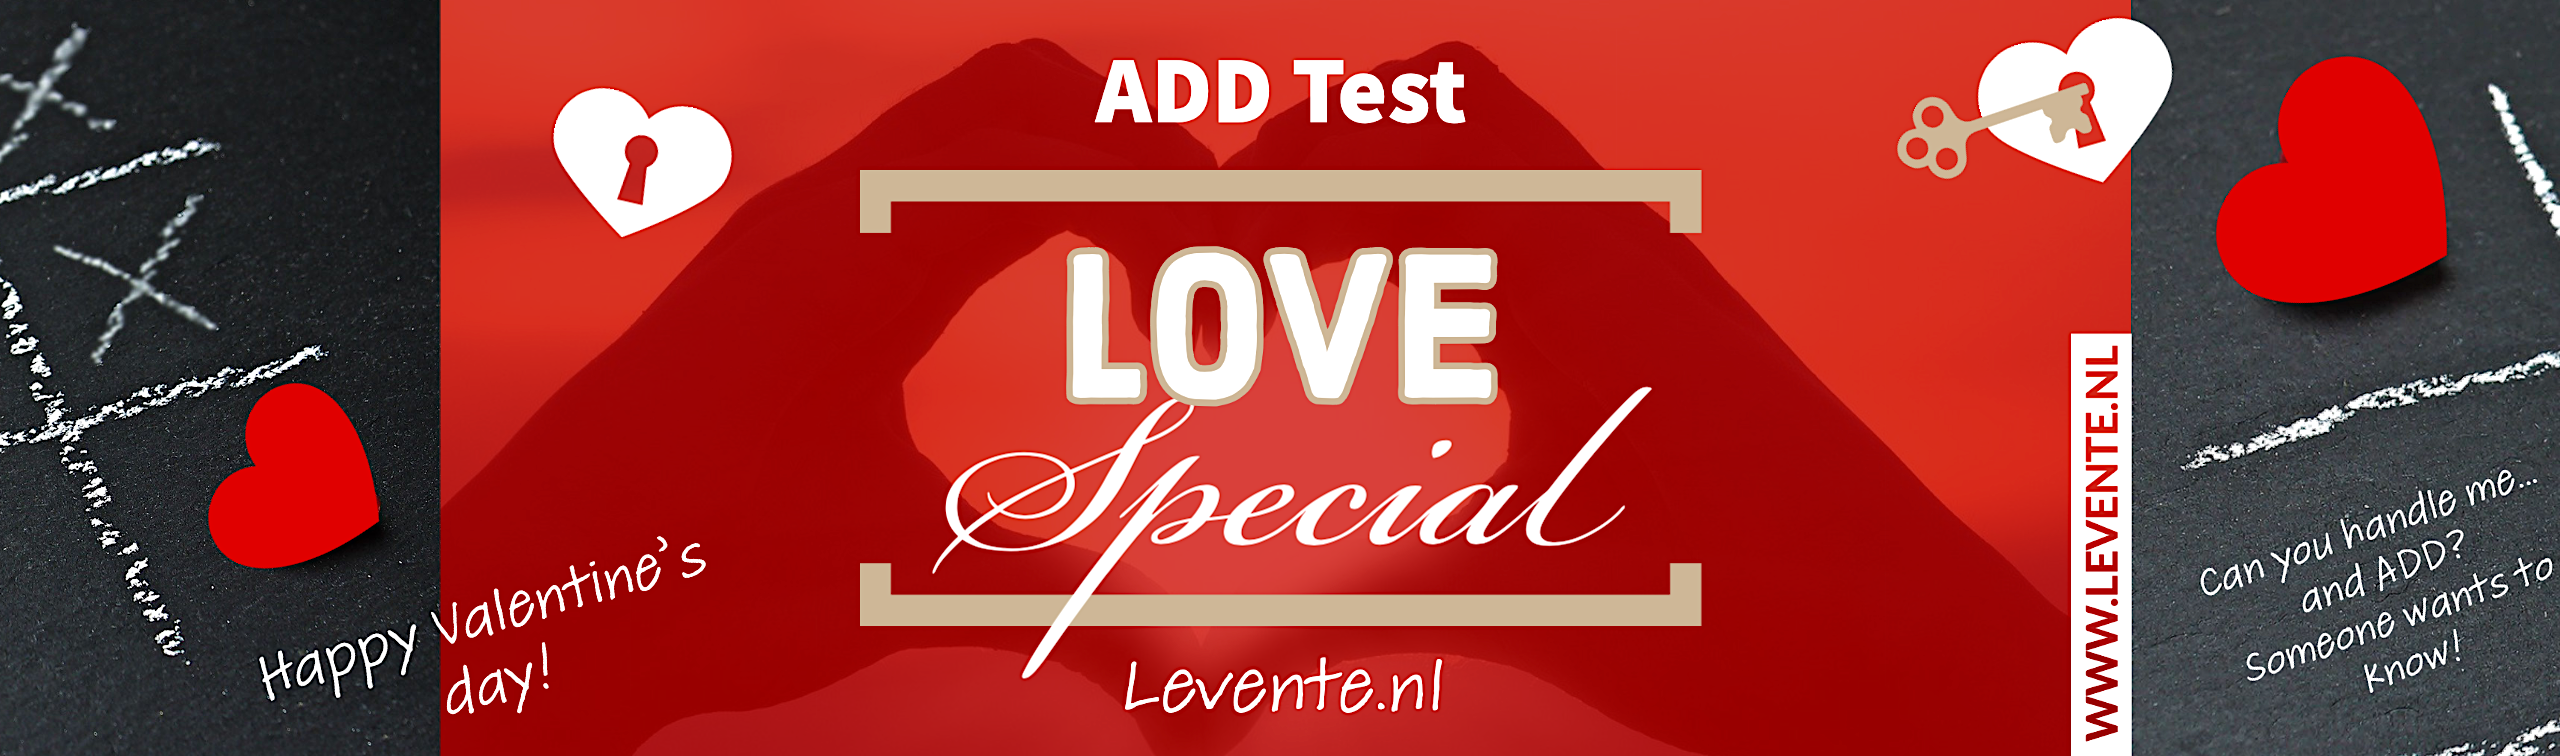 Love test Online Love